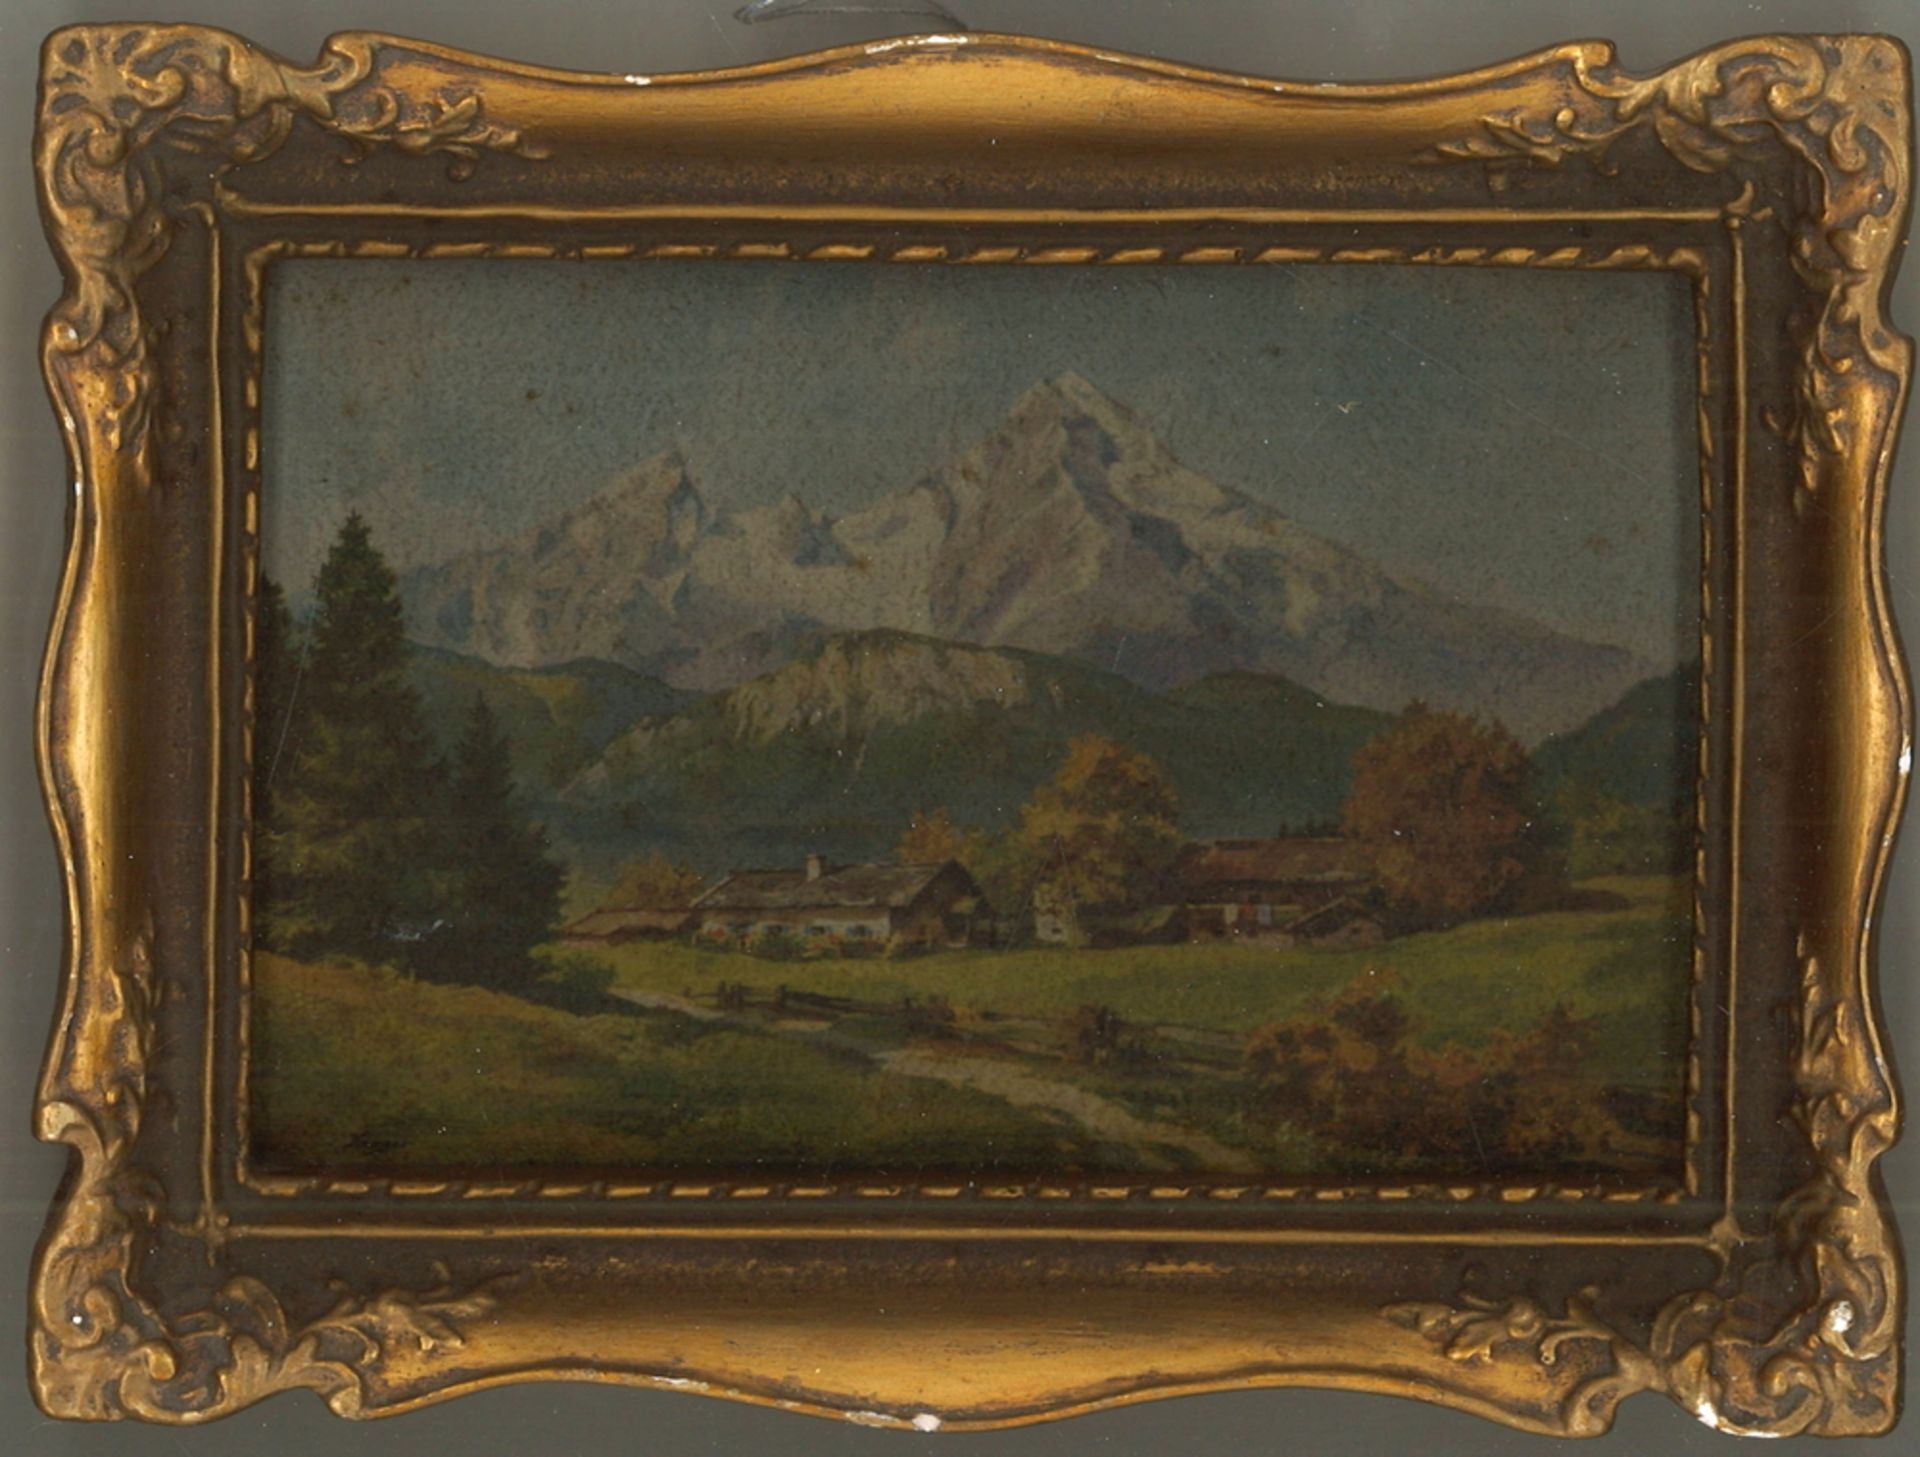 Druck eines Gemäldes von Karger "Alpine Landschaft" im goldenen Rahmen. Maße: Höhe ca. 13,5 cm,